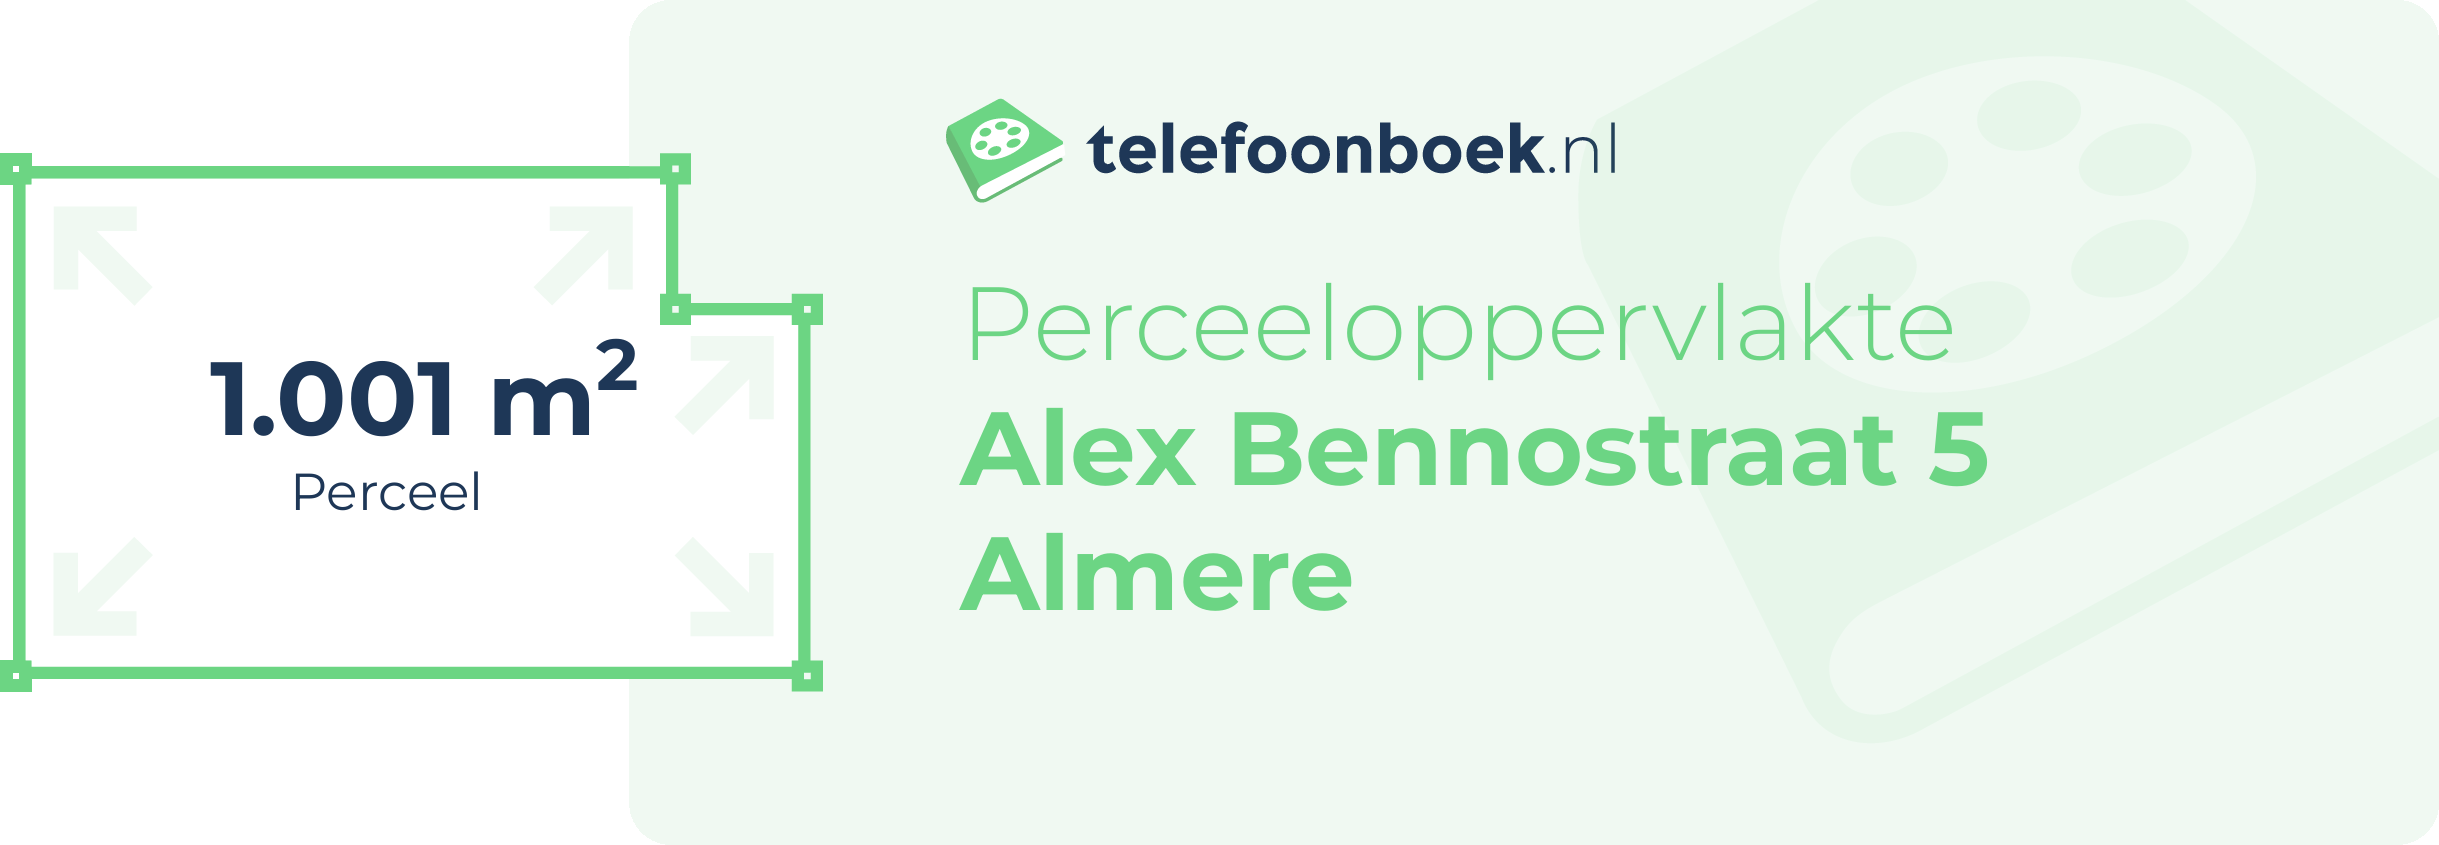 Perceeloppervlakte Alex Bennostraat 5 Almere